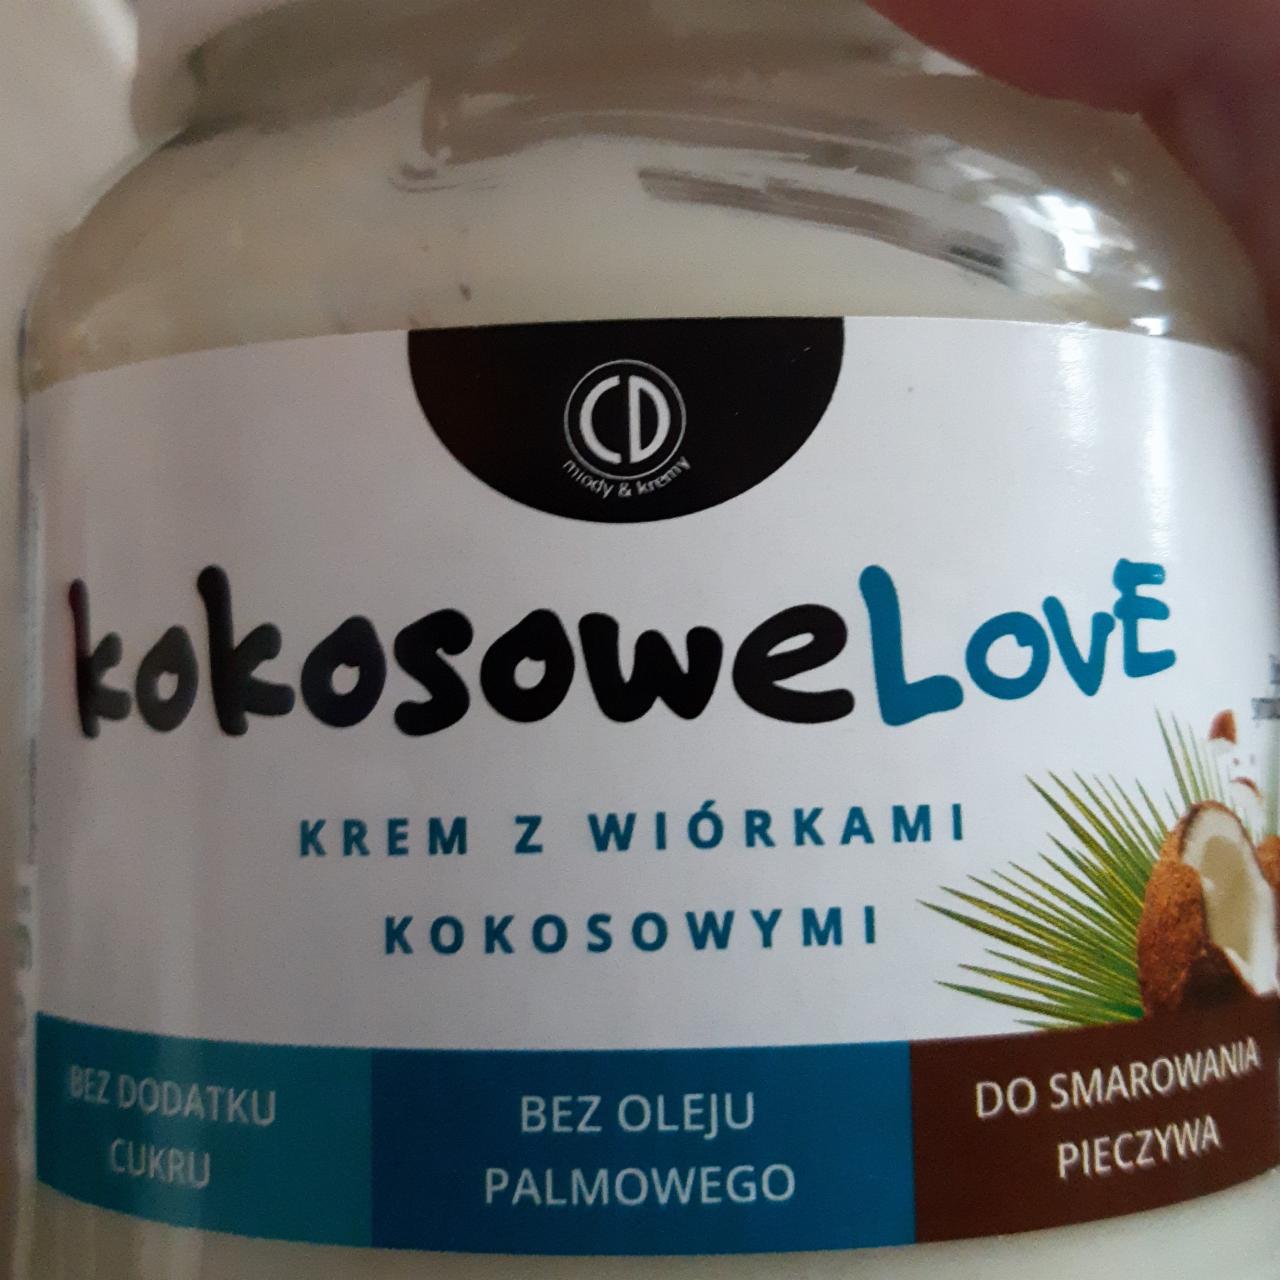 Фото - Крем з кокосовою стружкою Kokosowe Love CD